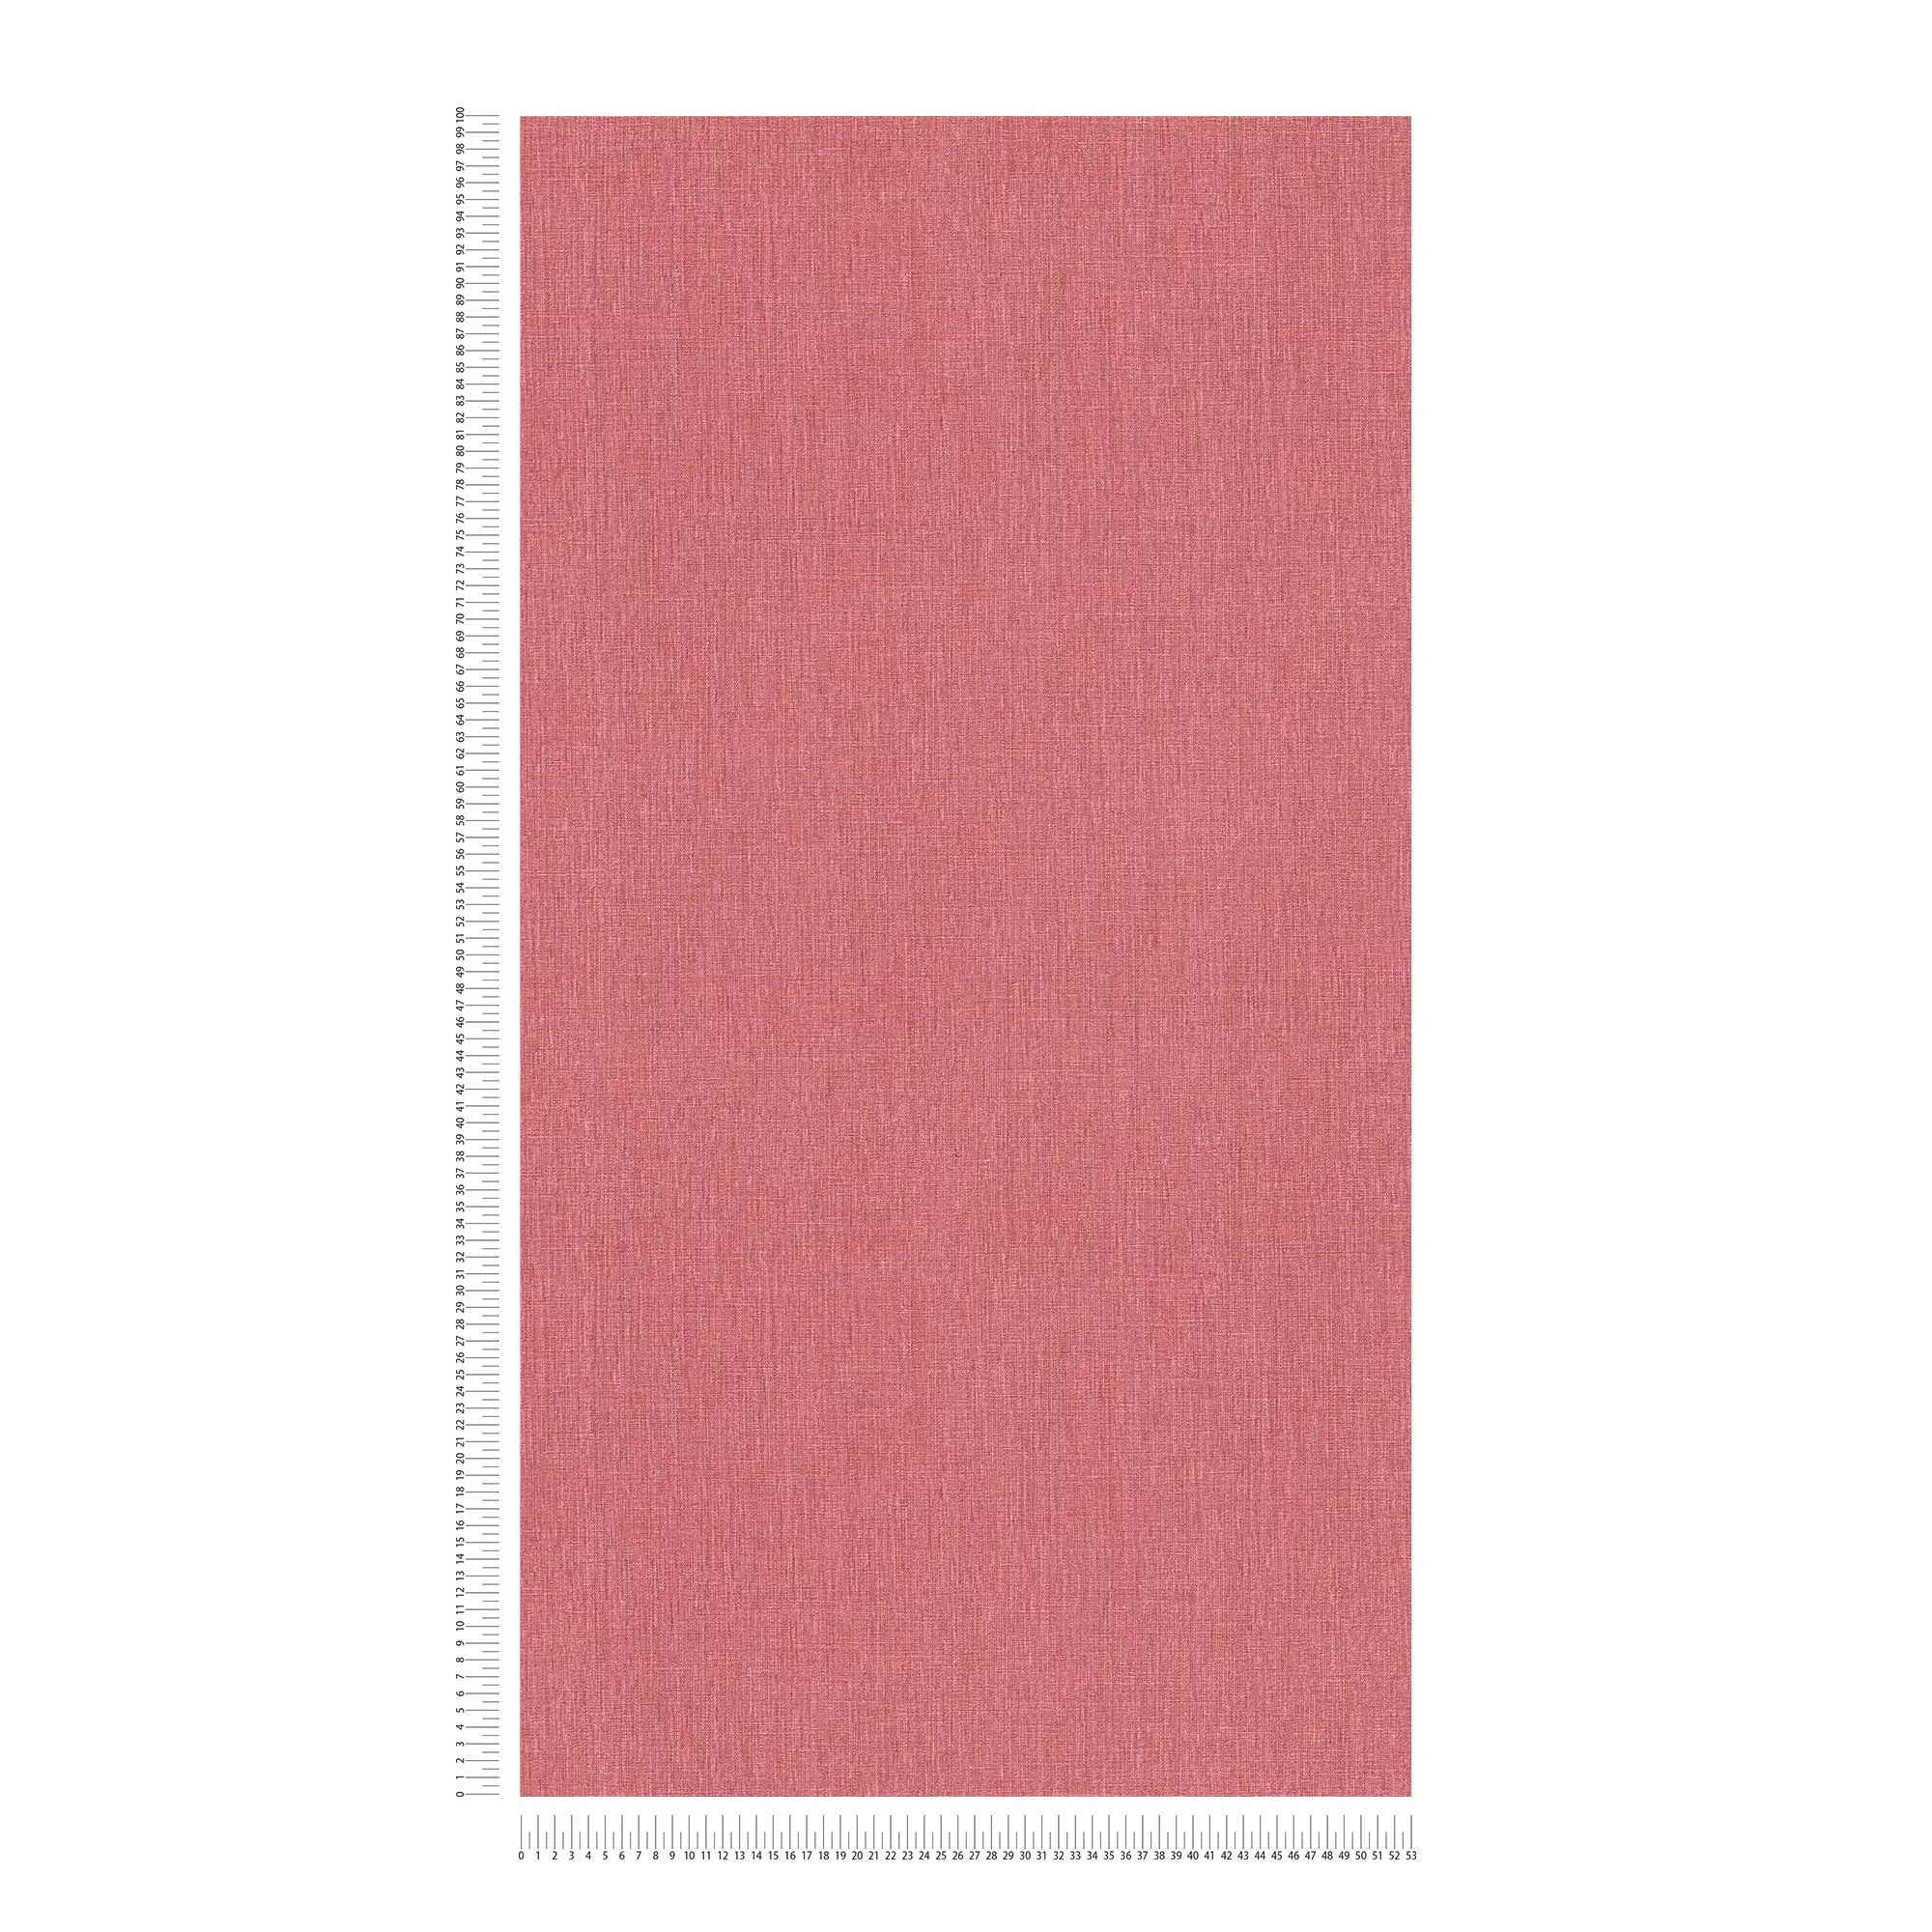             Vliesbehang in één kleur met textiellook in matte afwerking - rood
        